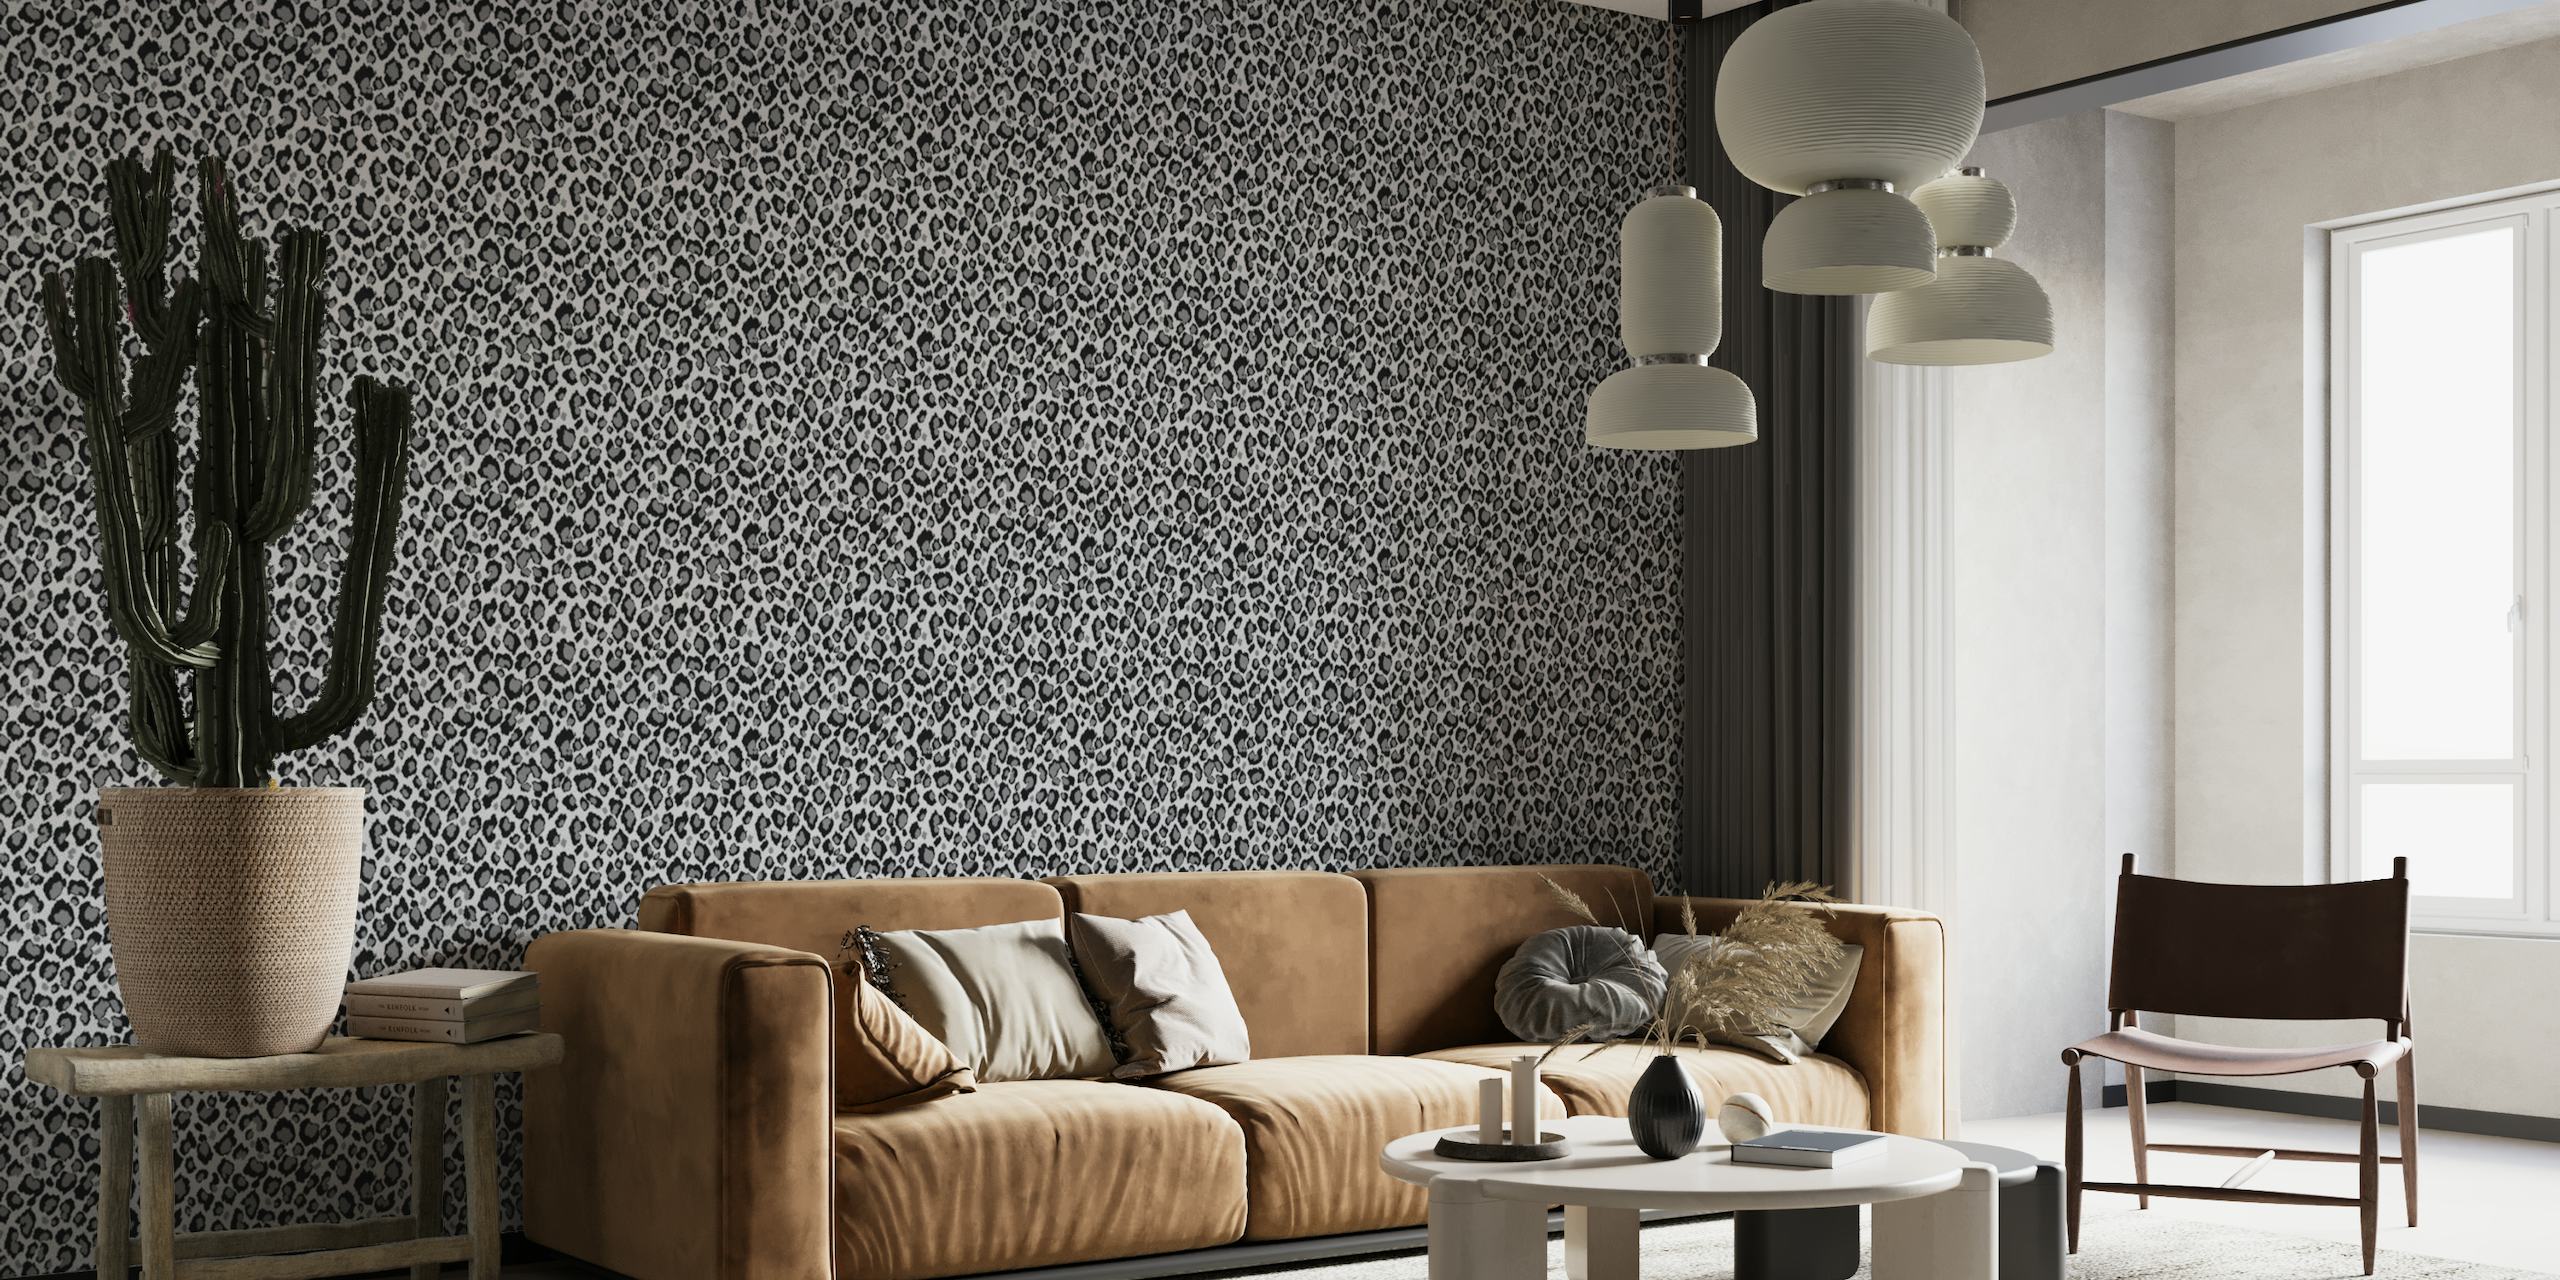 Papier peint mural imprimé léopard gris et noir pour une décoration intérieure sophistiquée.